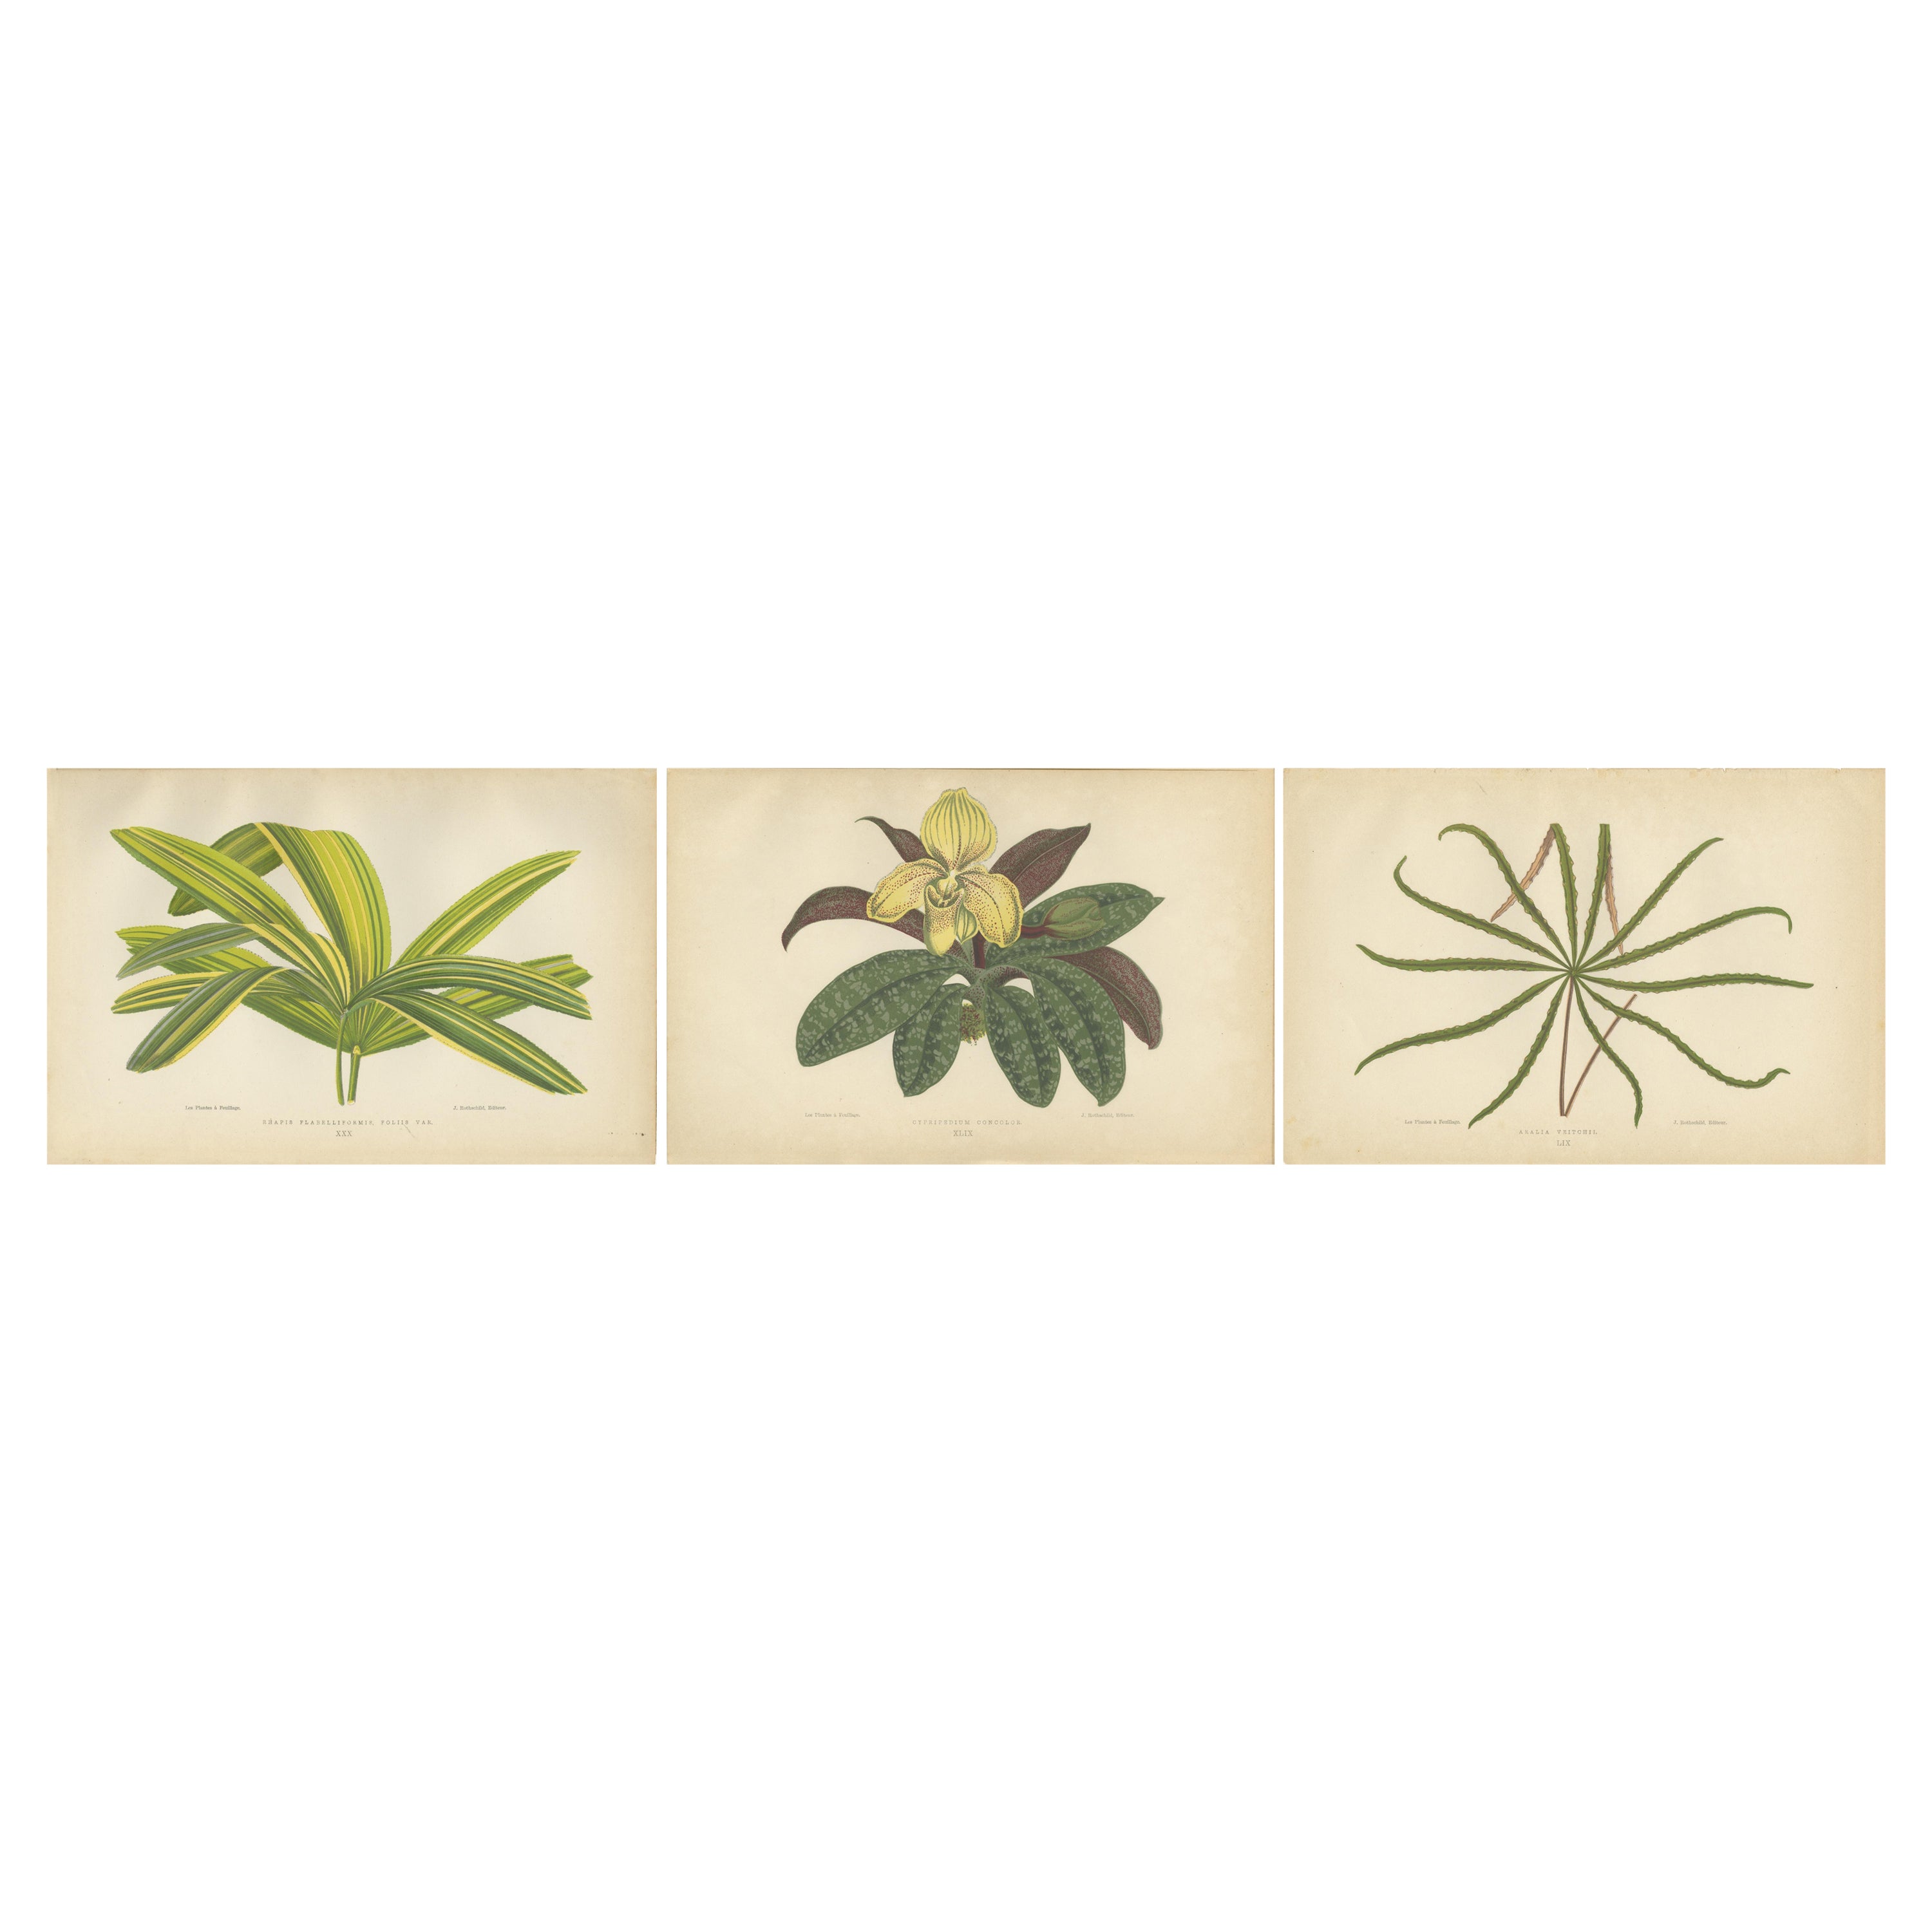 Trio of Elegance: Vintage Botanical Prints, publié en 1880